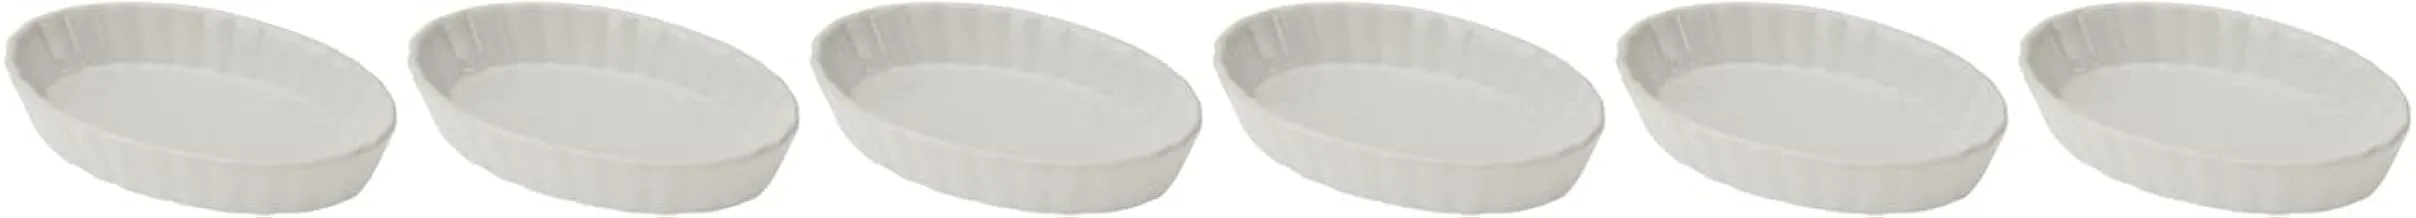 Küchenprofi 19 2500 00 06 6-Piece Creme Brulée Bowl Set